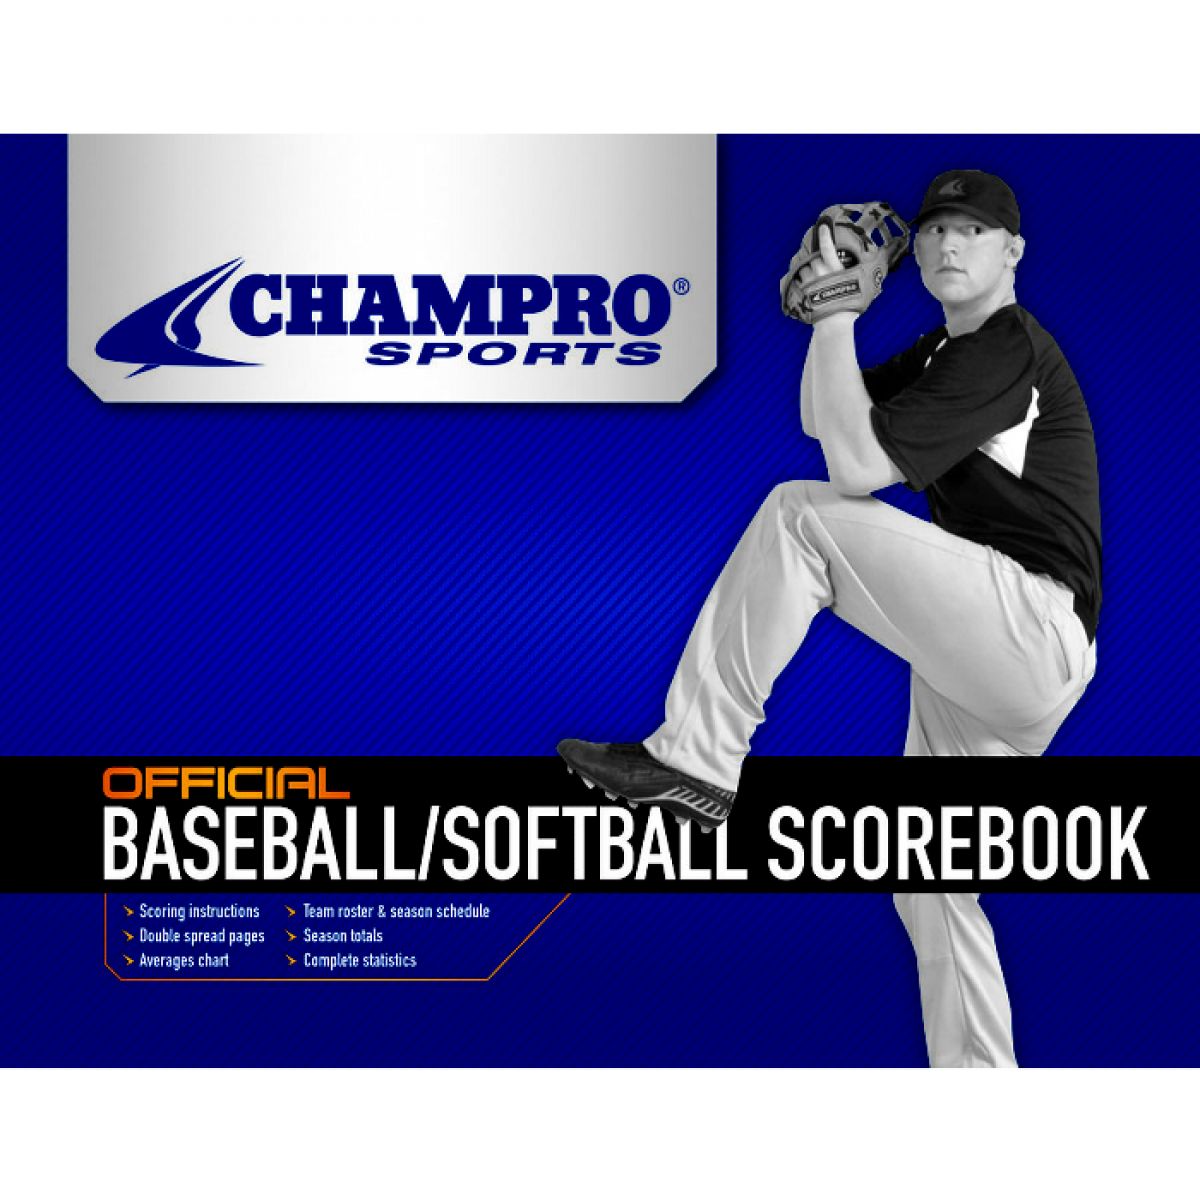 Champro Baseball/Softball Scorebook - image 1 of 2